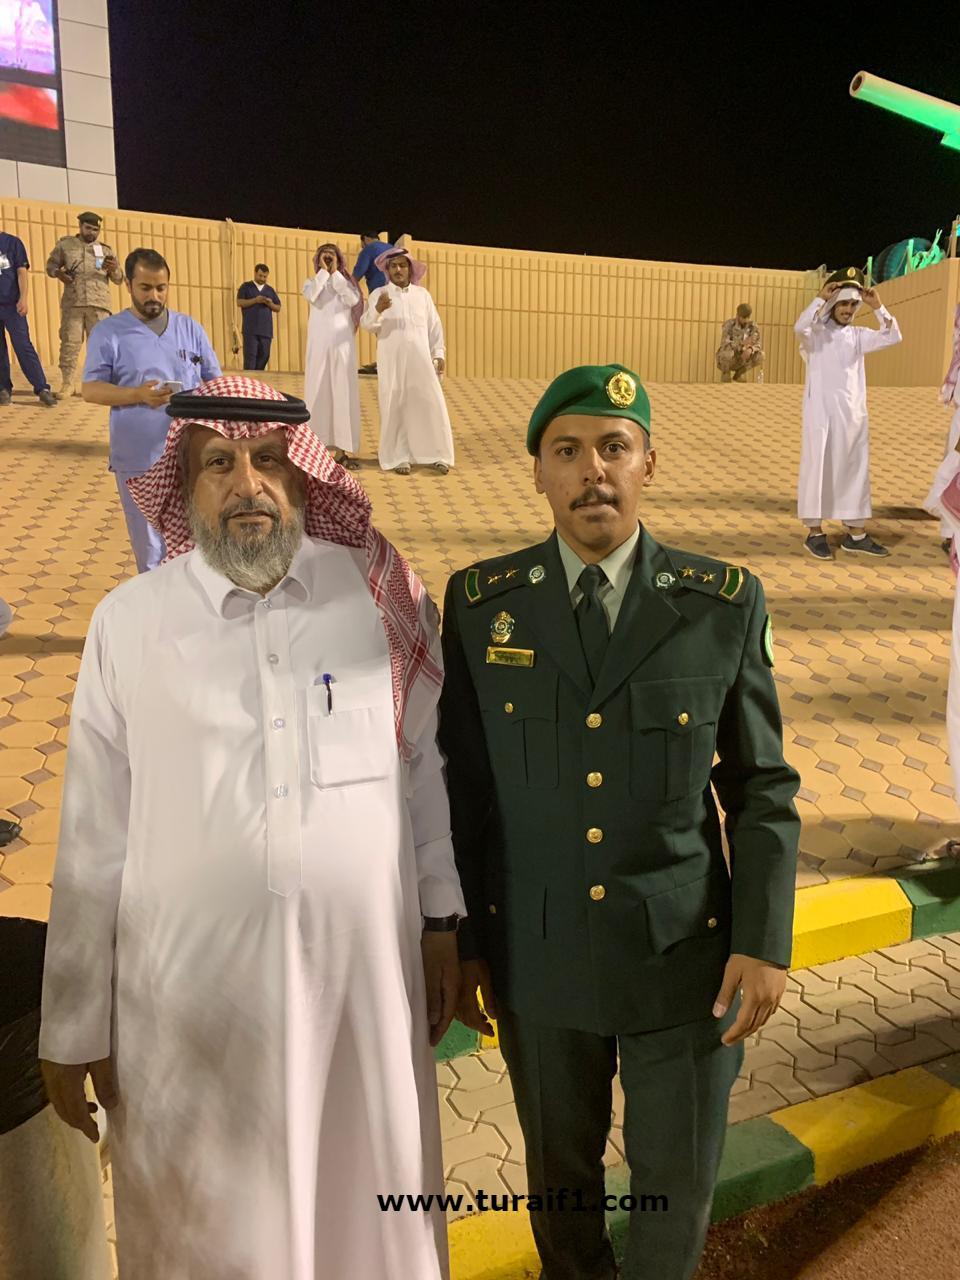 المهندس صالح بكر اليوسف يتخرج من كلية الملك عبدالعزيز الحربية برتبة ملازم  أول - اخبارية طريف